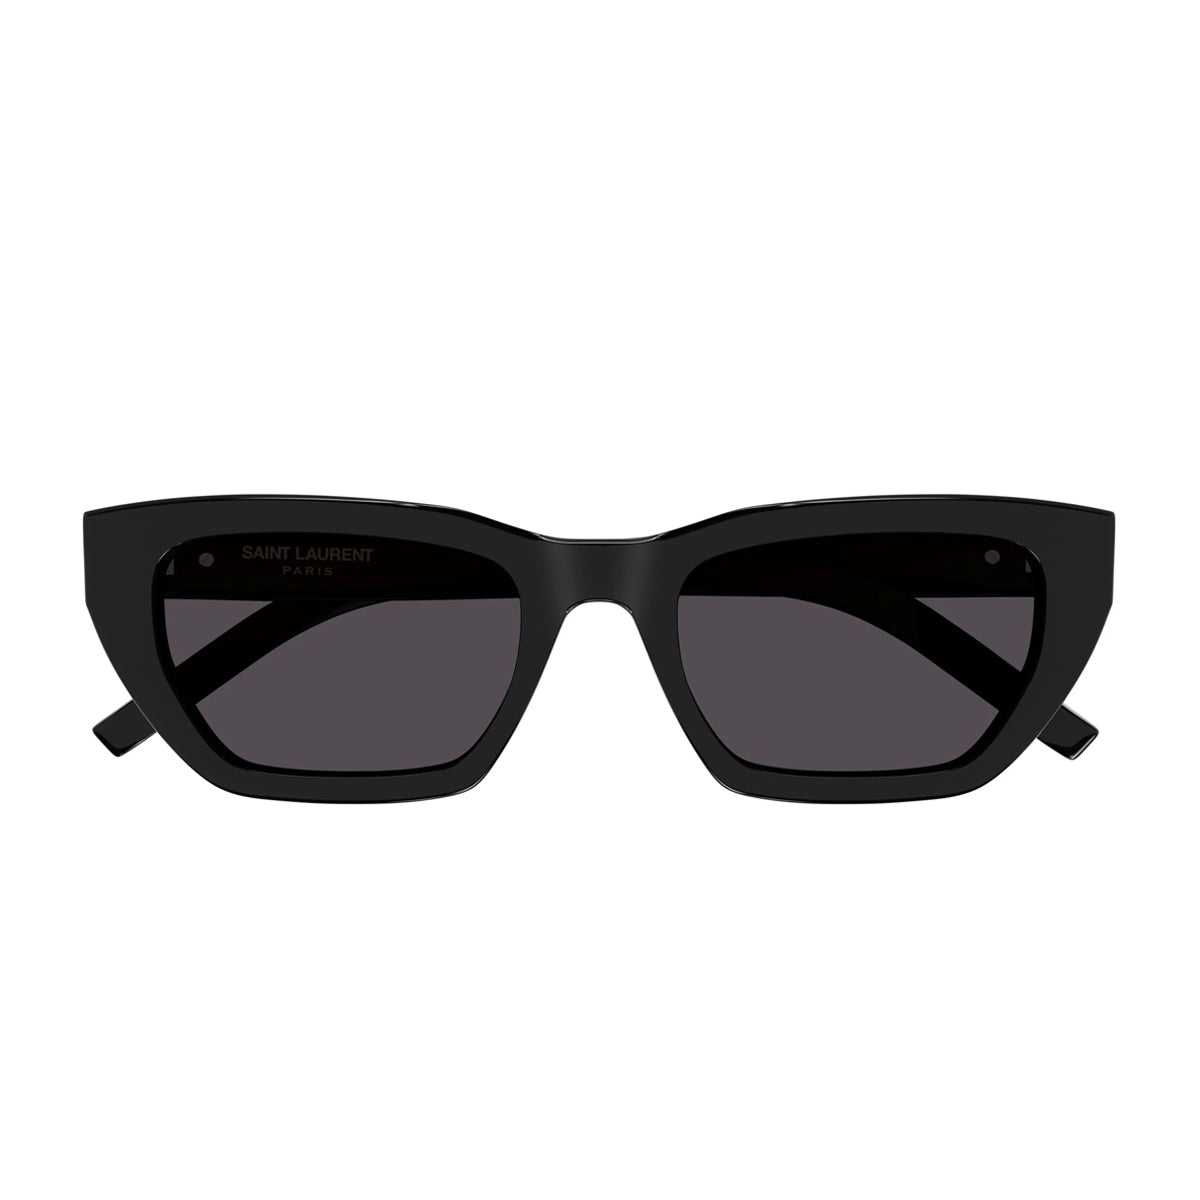 SL M127/F 001-Occhiali da sole-Saint Laurent-Gli occhiali da sole Saint Laurent sono un must-have per gli amanti della moda e per chi cerca un accessorio che unisca stile ed efficienza. Essi incarnano l'essenza dell'eleganza e dello stile sofisticato della Maison. In particolare, il modello SL M127/F presenta una montatura in acetato con una forma cat-eye che reinterpreta le forme iconiche distintive della Maison. Questo modello è contraddistinto dall'iconico logo YSL Monogram sulla cerniera, un dettaglio p